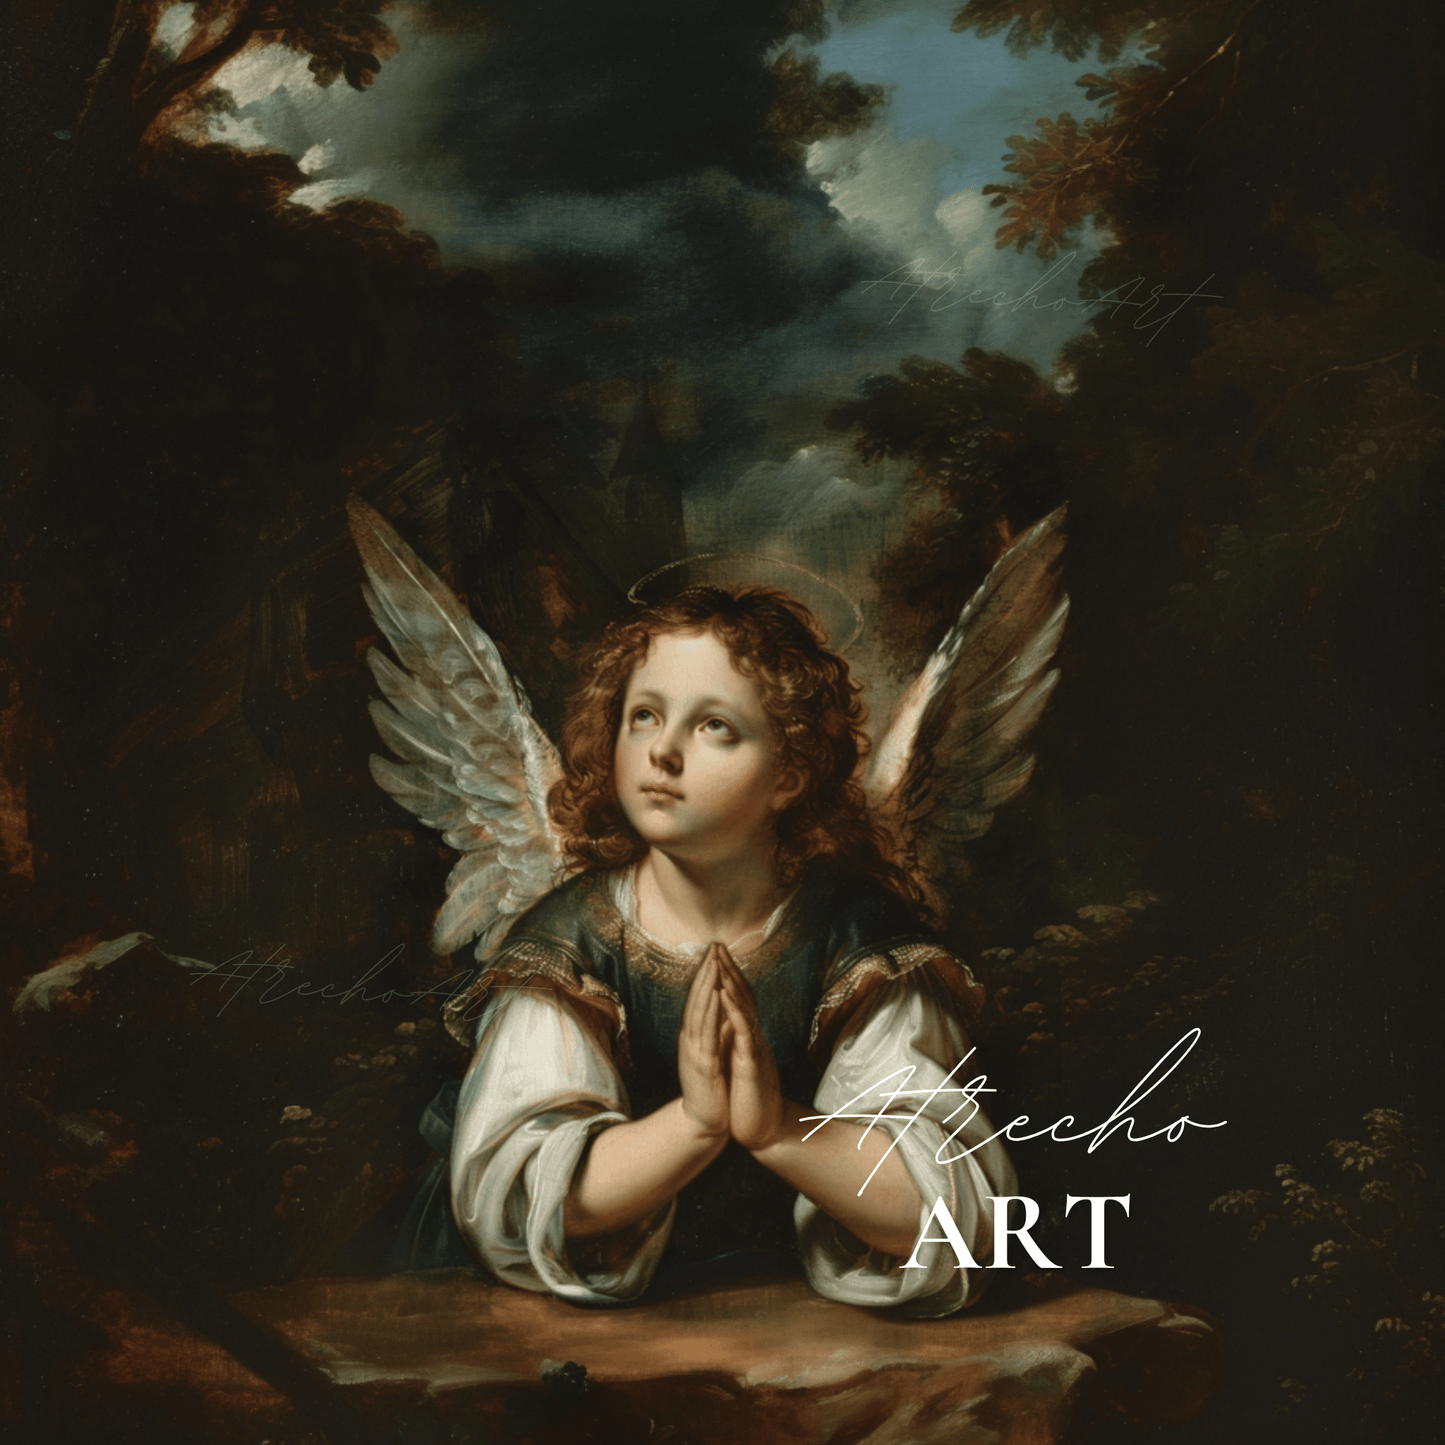 ANGEL | Printed Artwork | RE28